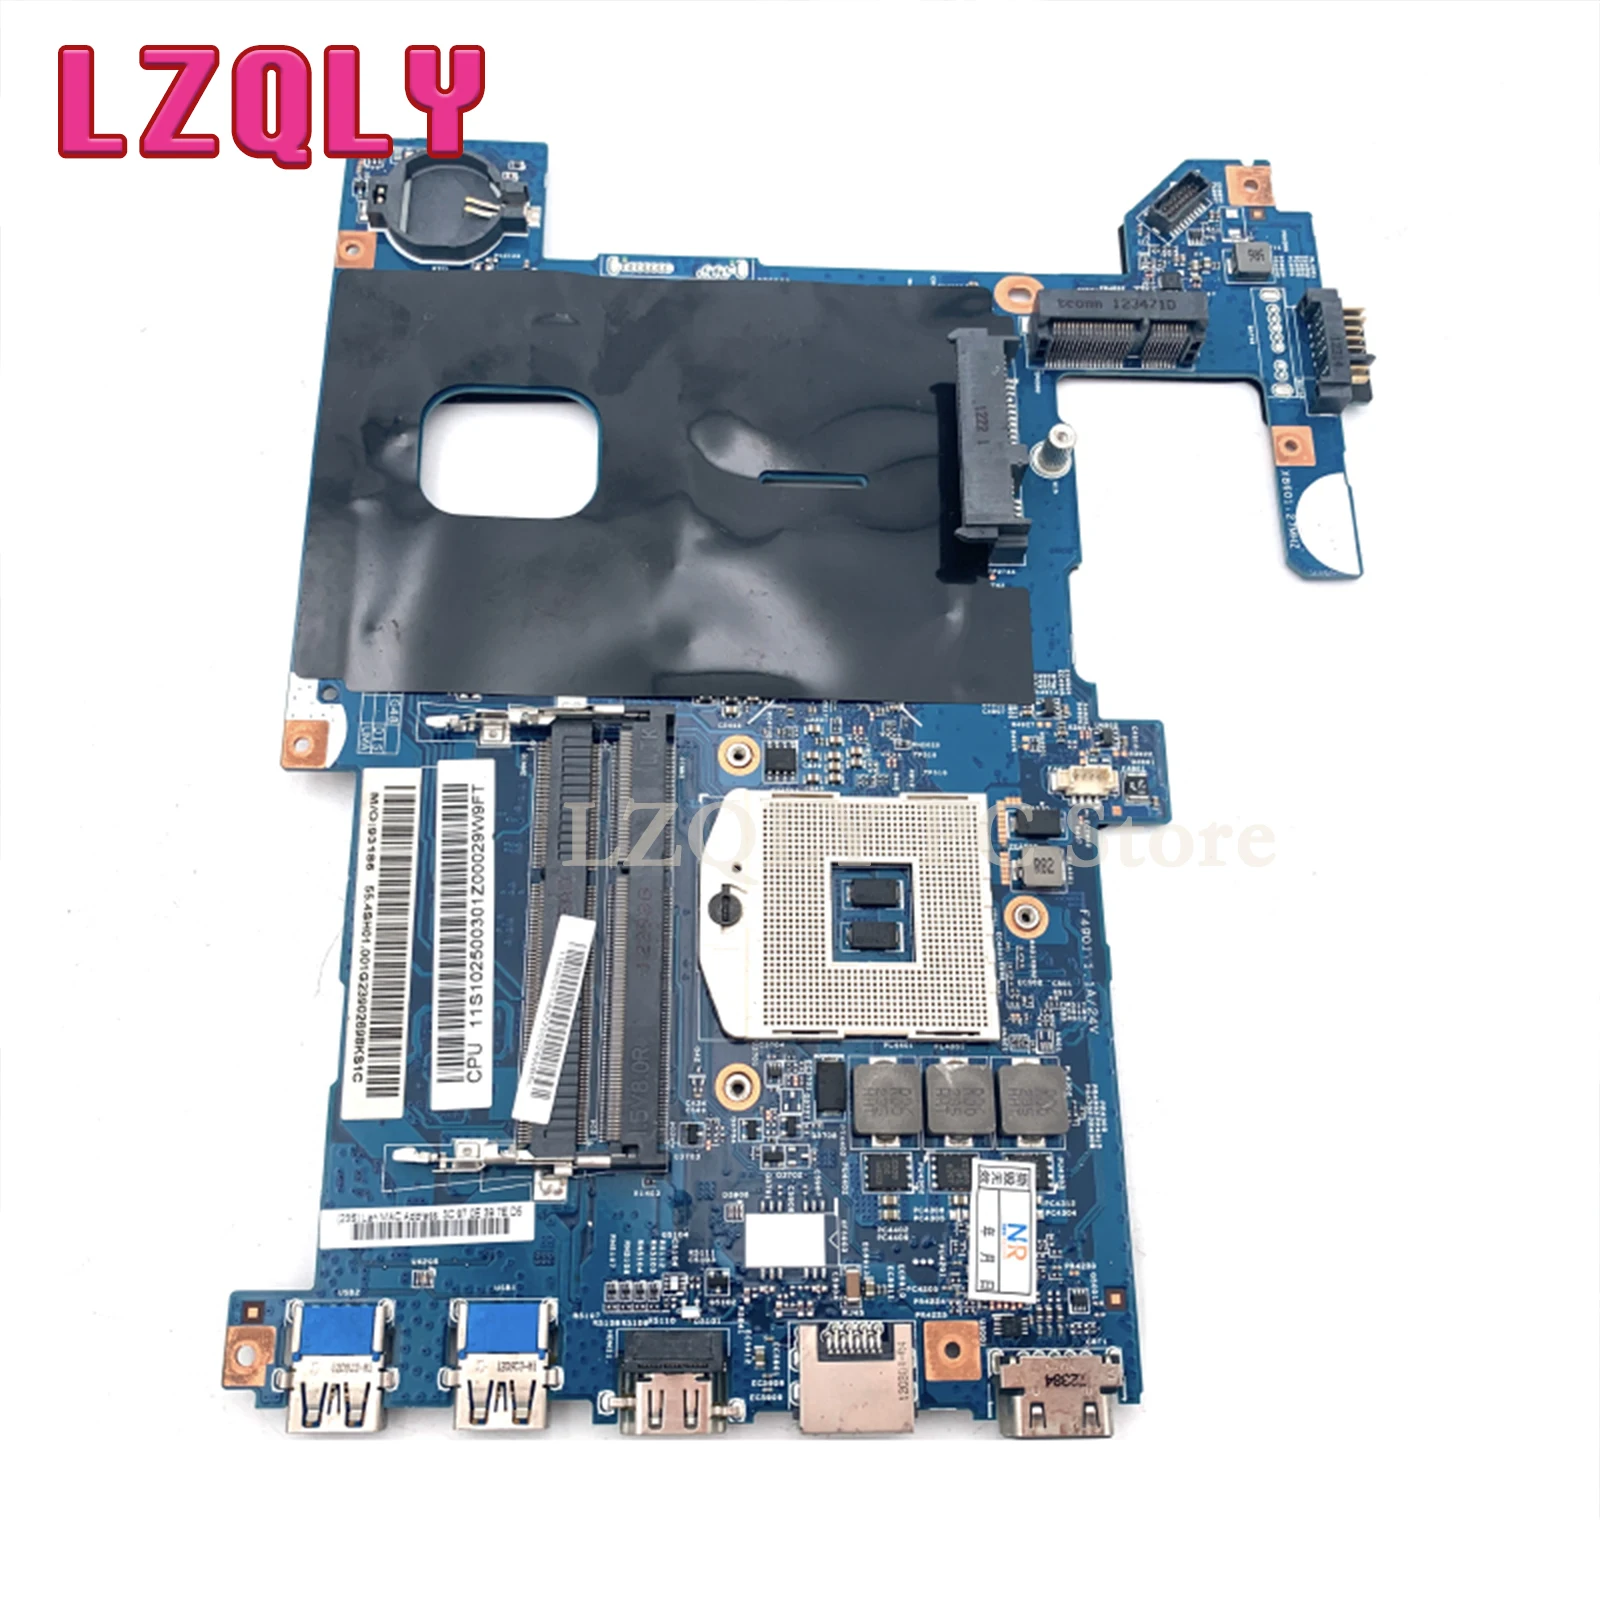 LZQLY 48.4SG06.011 48.4SG15.011 48.4SG16.011 LG4858 за Lenovo G580 дънна платка на лаптоп HM76 подкрепа i3 i5 i7 процесор, дънна платка 2